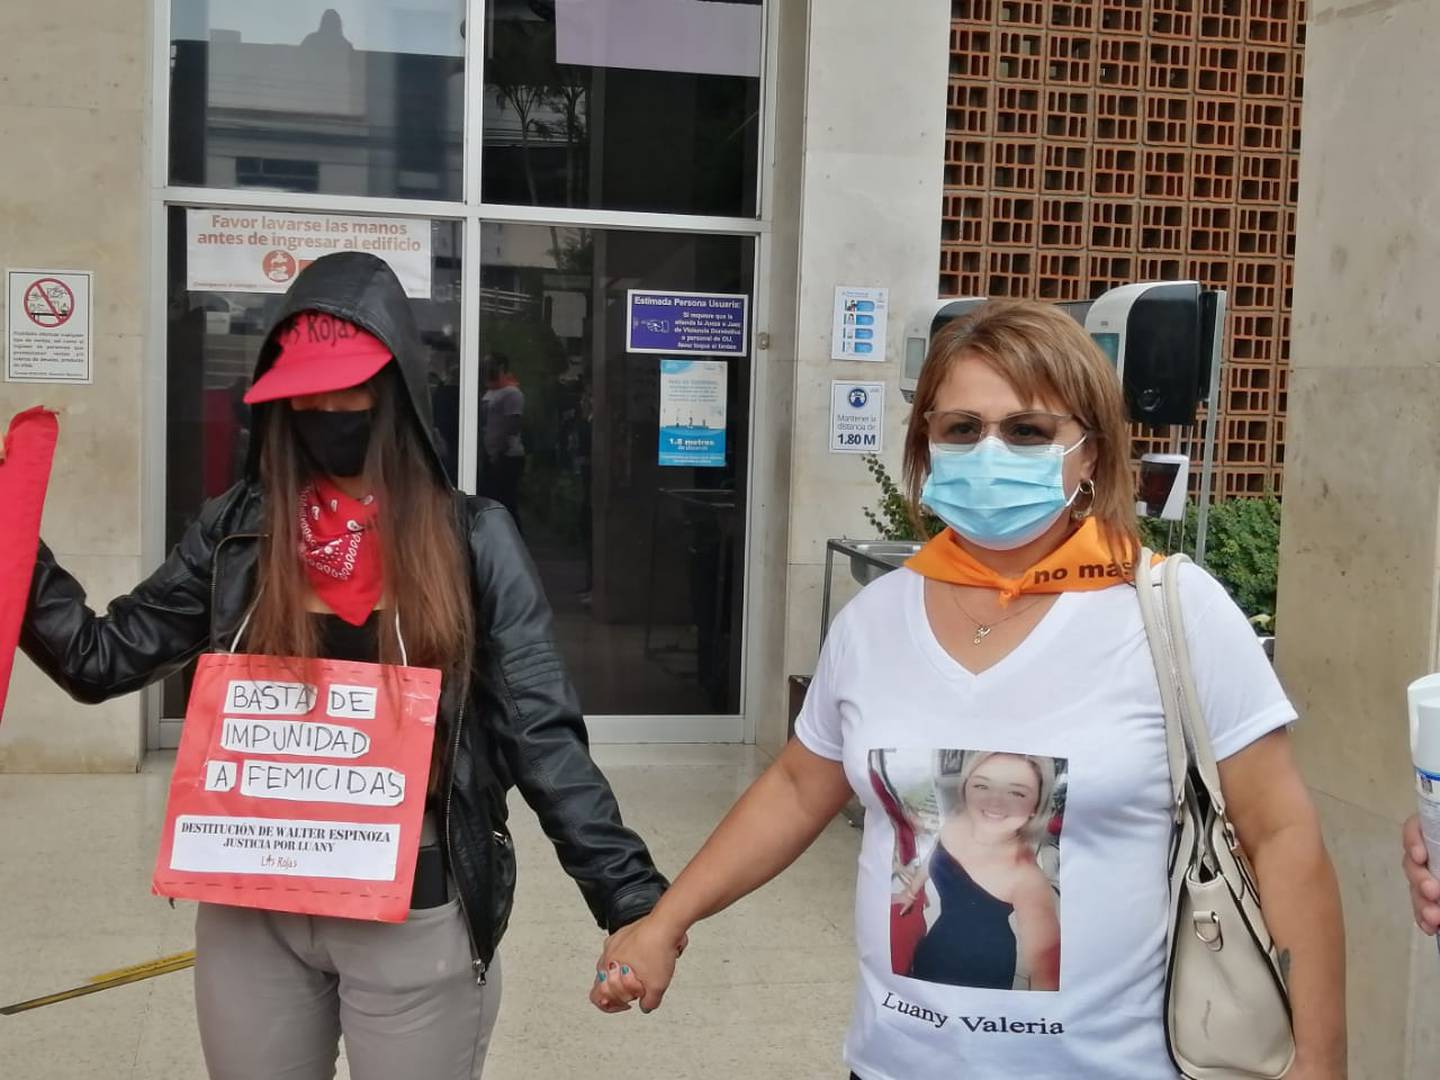 Patricia Zamora, madre de Luany Valeria, recibió en los Tribunales la solidaridad de personas que piden justicia contra los homicidas de mujeres. Foto: Keyna Calderón.